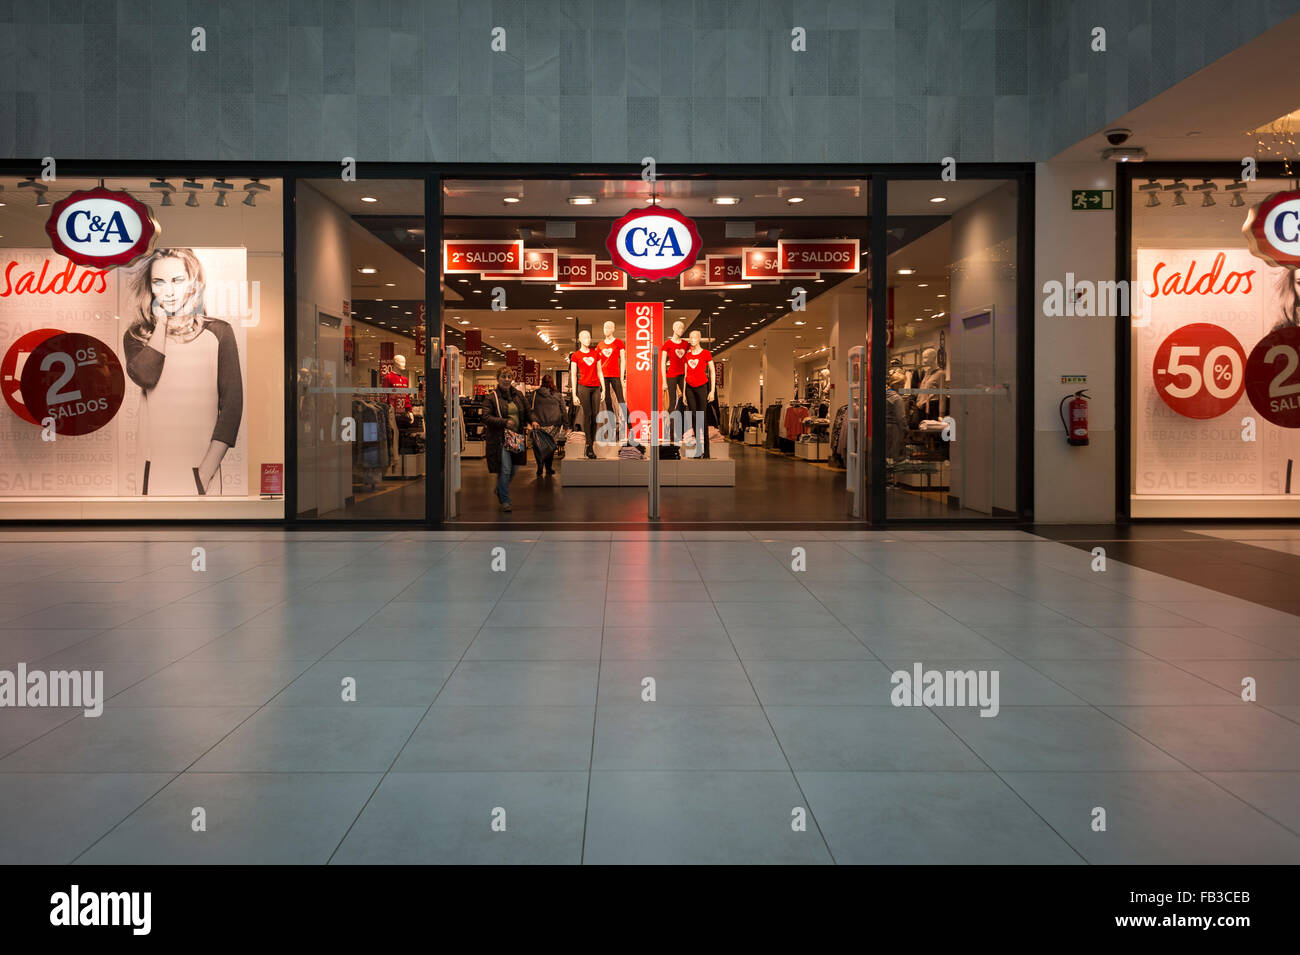 C & A speichern im portugiesischen Shopping-Mall. Stockfoto